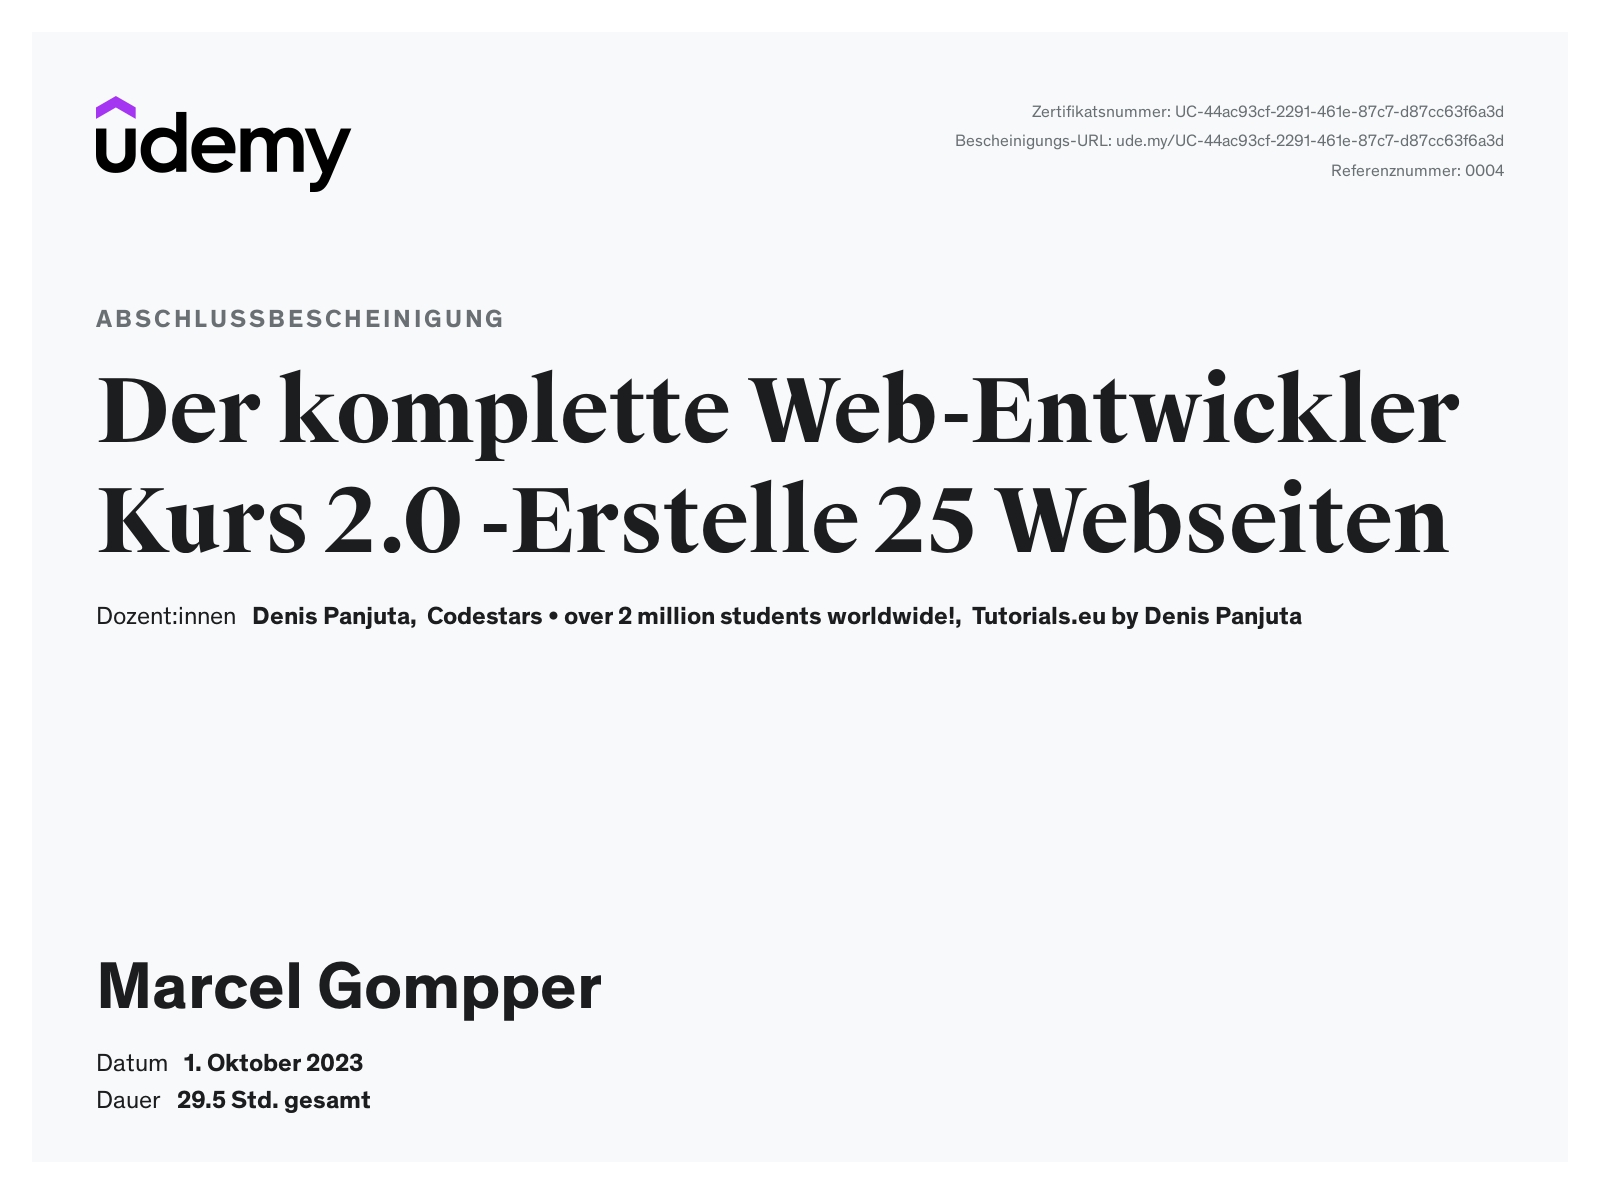 Zertifikat Web-Entwickler Gompper Webdesign